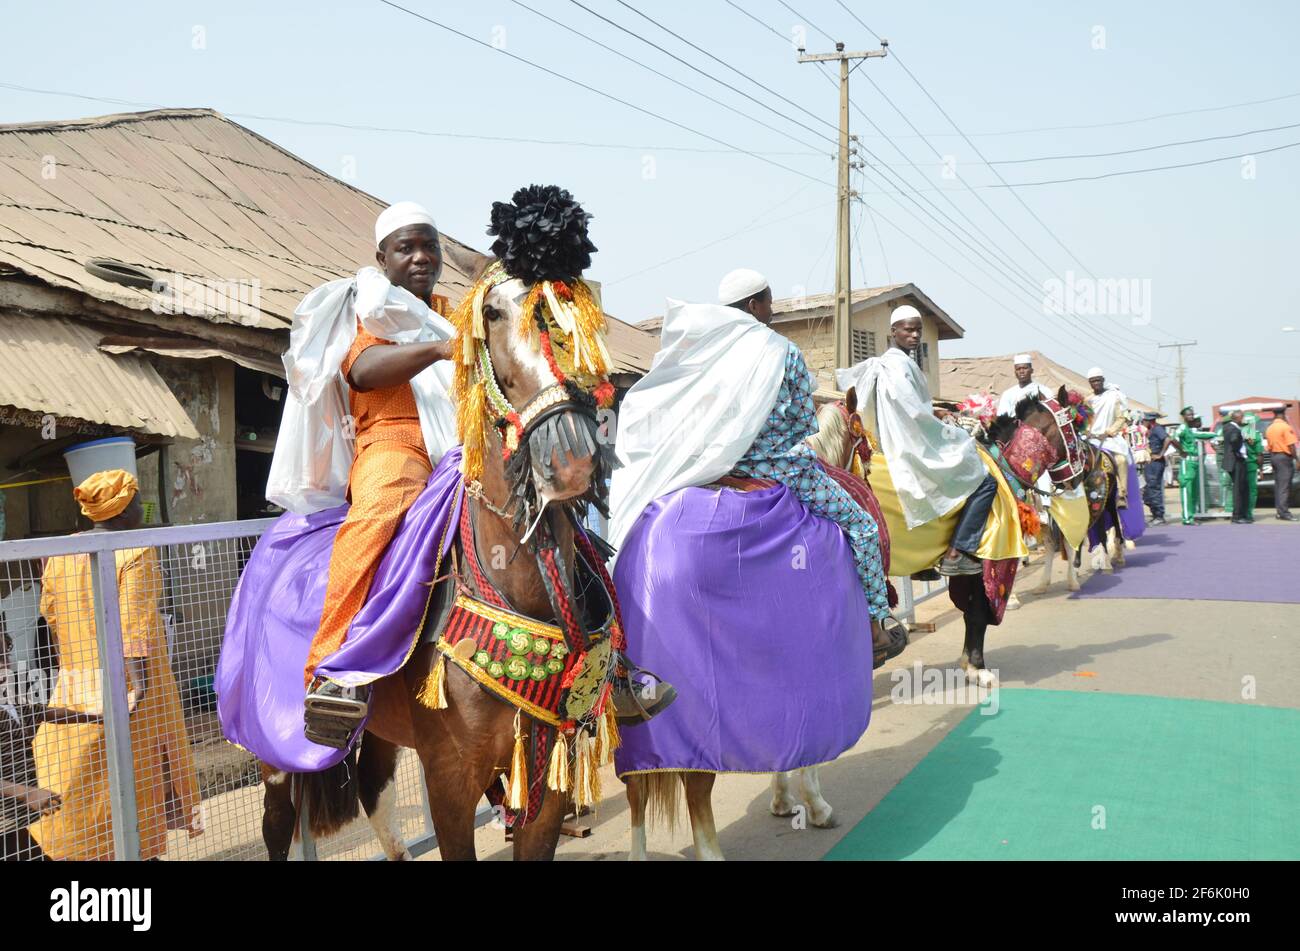 Palace guards ride on a horse at the coronation of the newly installed monarch of Ile-Ife Oba Adeyeye Ogunwusi, in Ile-Ife, southwest Nigeria Stock Photo